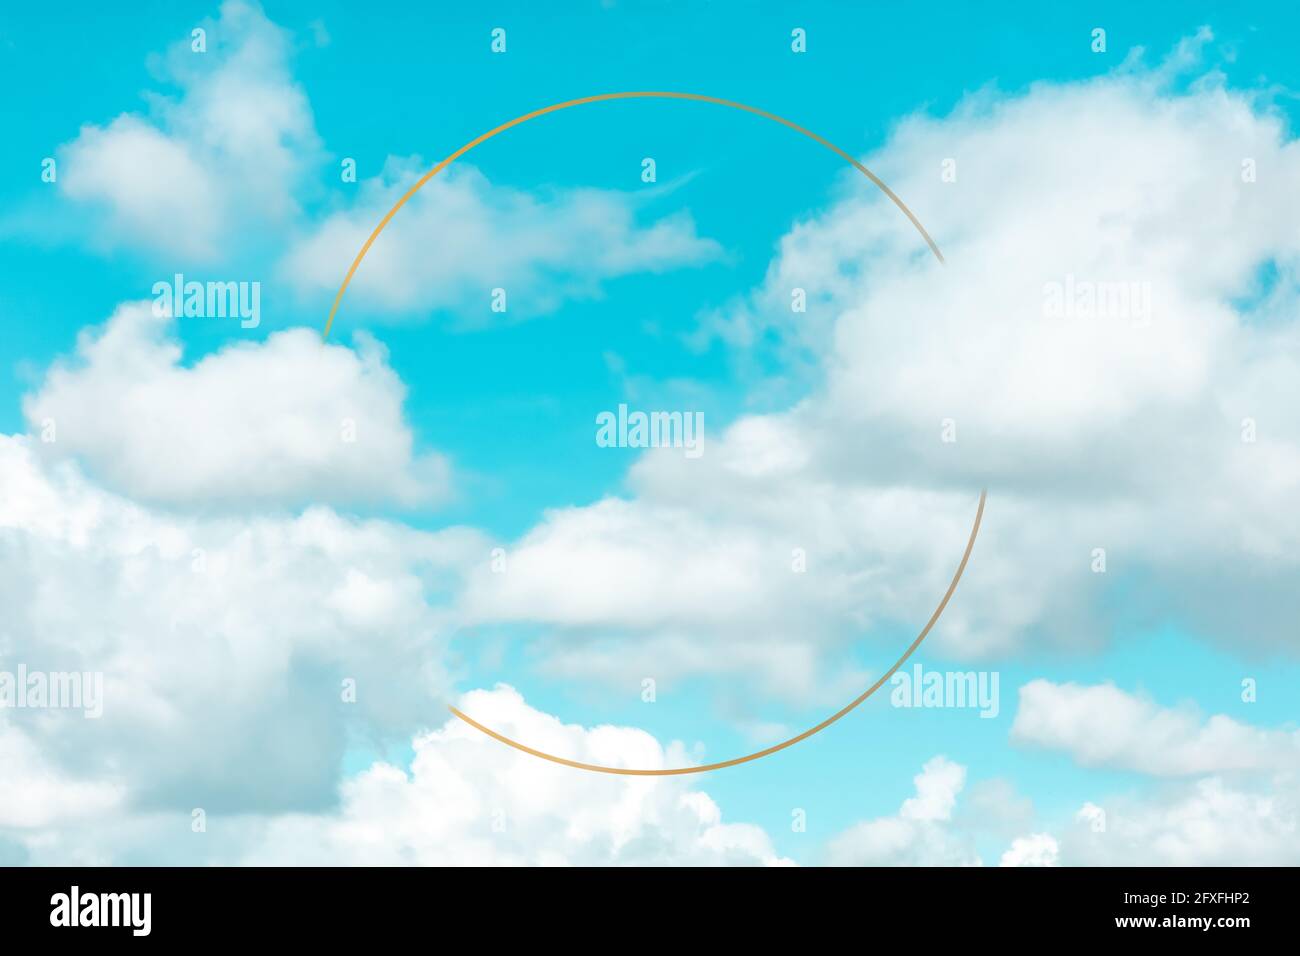 Ciel bleu avec des nuages blancs et un cadre doré, un modèle de conception avec un emplacement pour le texte Banque D'Images